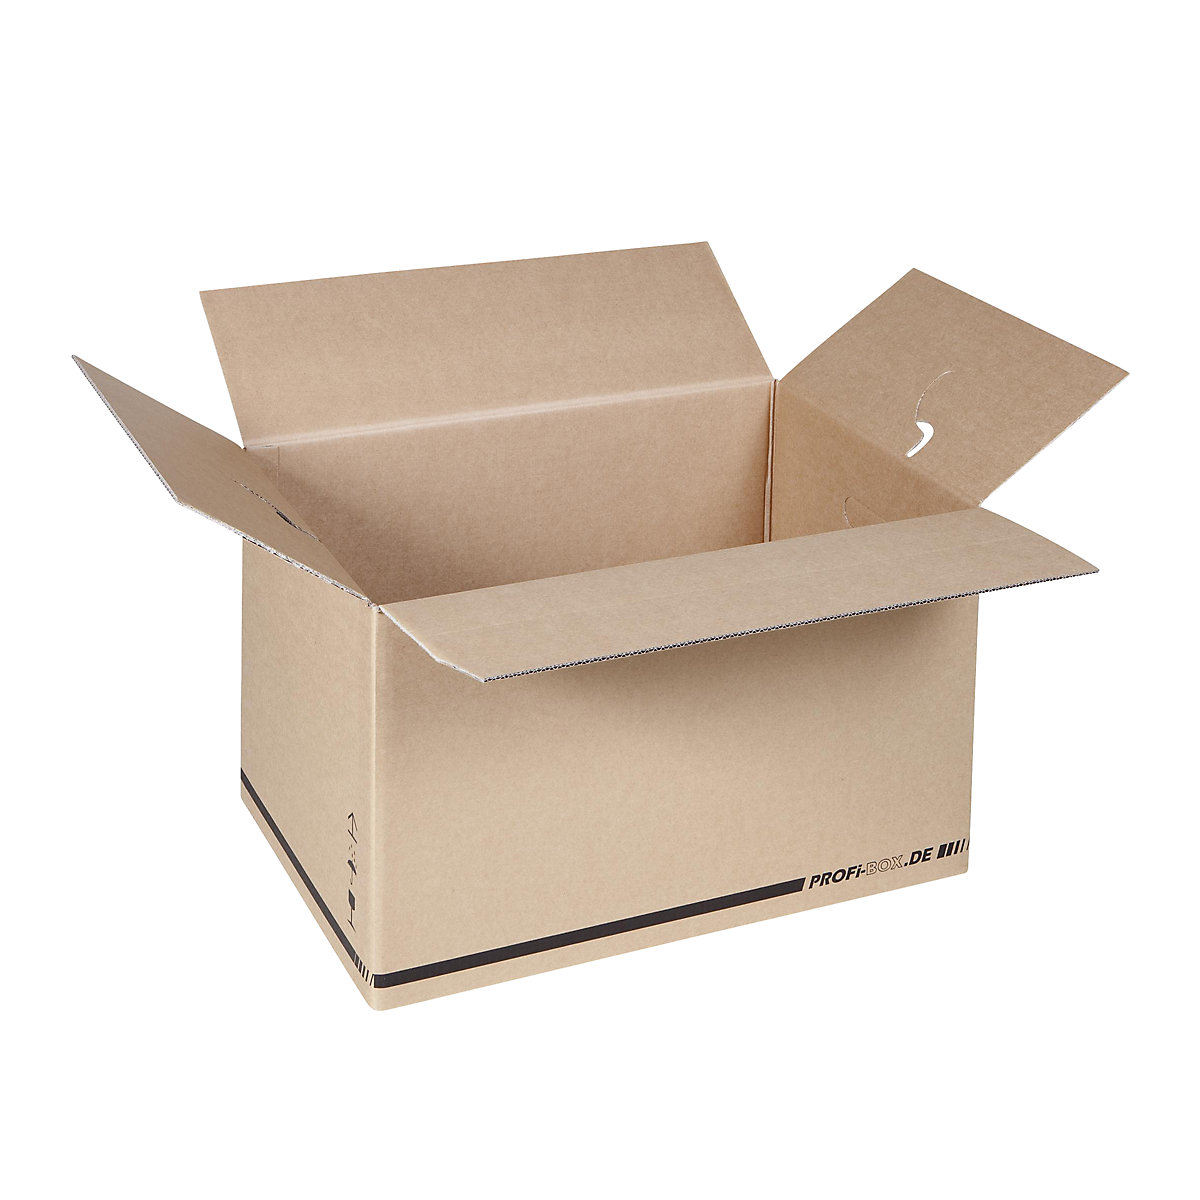 Profesionalne škatle, iz dvovalnega kartona, notranje mere 574 x 376 x 340 mm, FEFCO 0216, DE 50 kosov-7